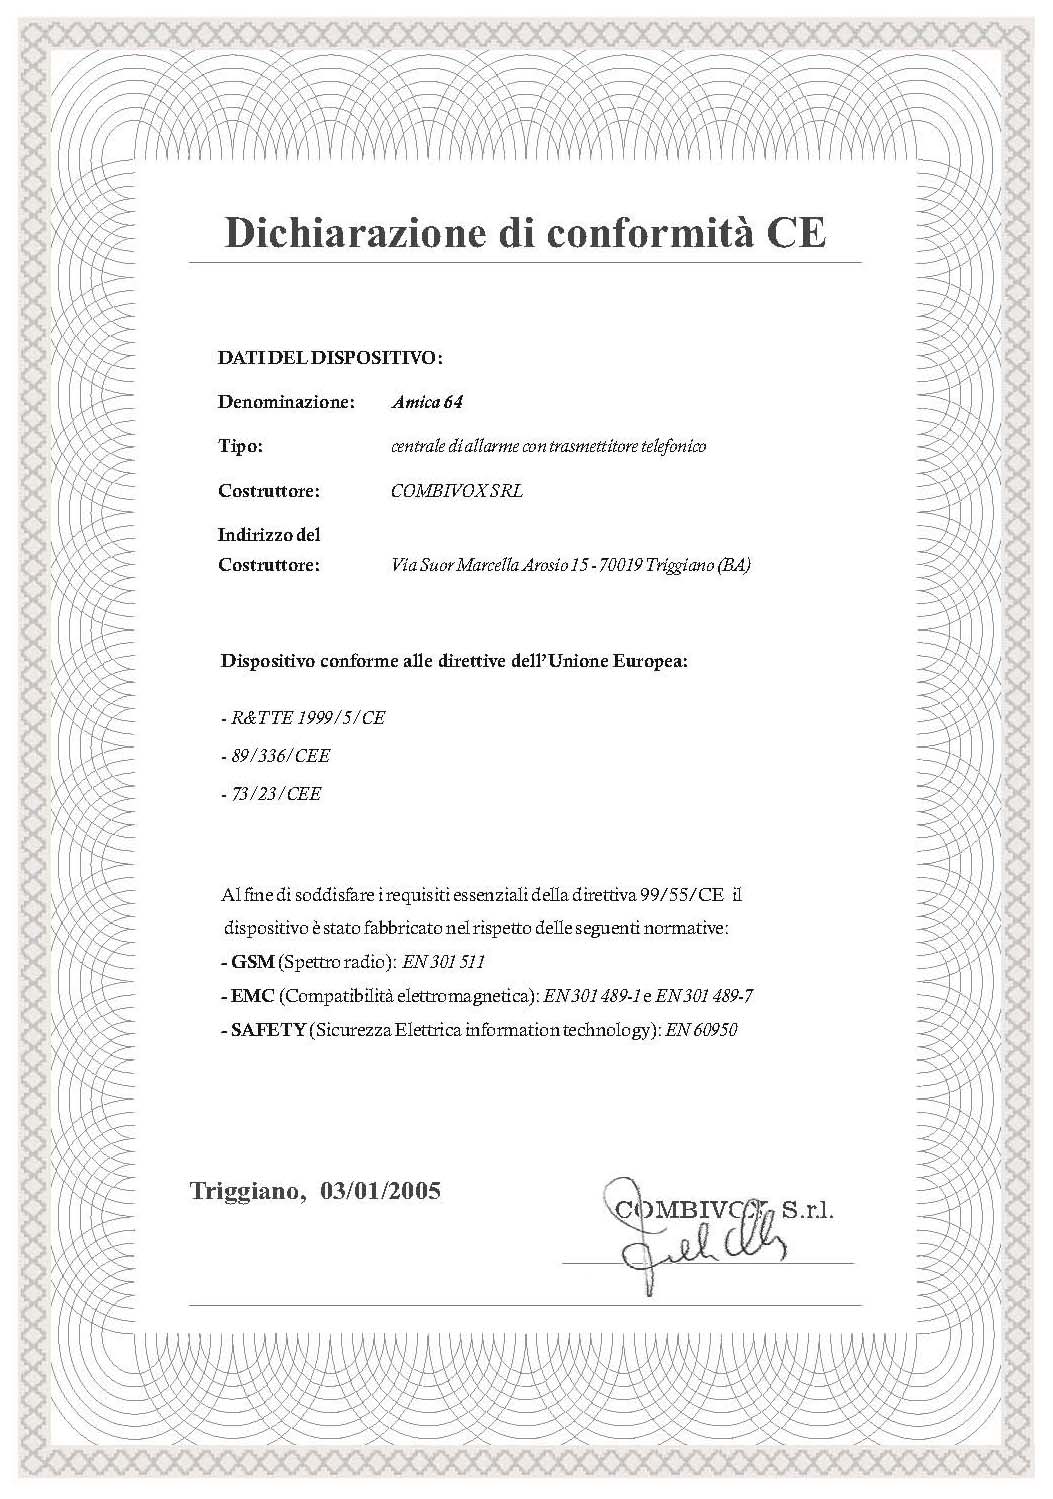 SH-D2F Centrale di allarme 2 Zone Securvera Via Monti Tiburtini 510 Roma - Bassa Tensione: EN 609550/1996 e A4/1997 - Emissioni: EN 50081-1/1992 - Immunità: EN 50130-4/1995 e A1/1999 - Antifurto: CEI